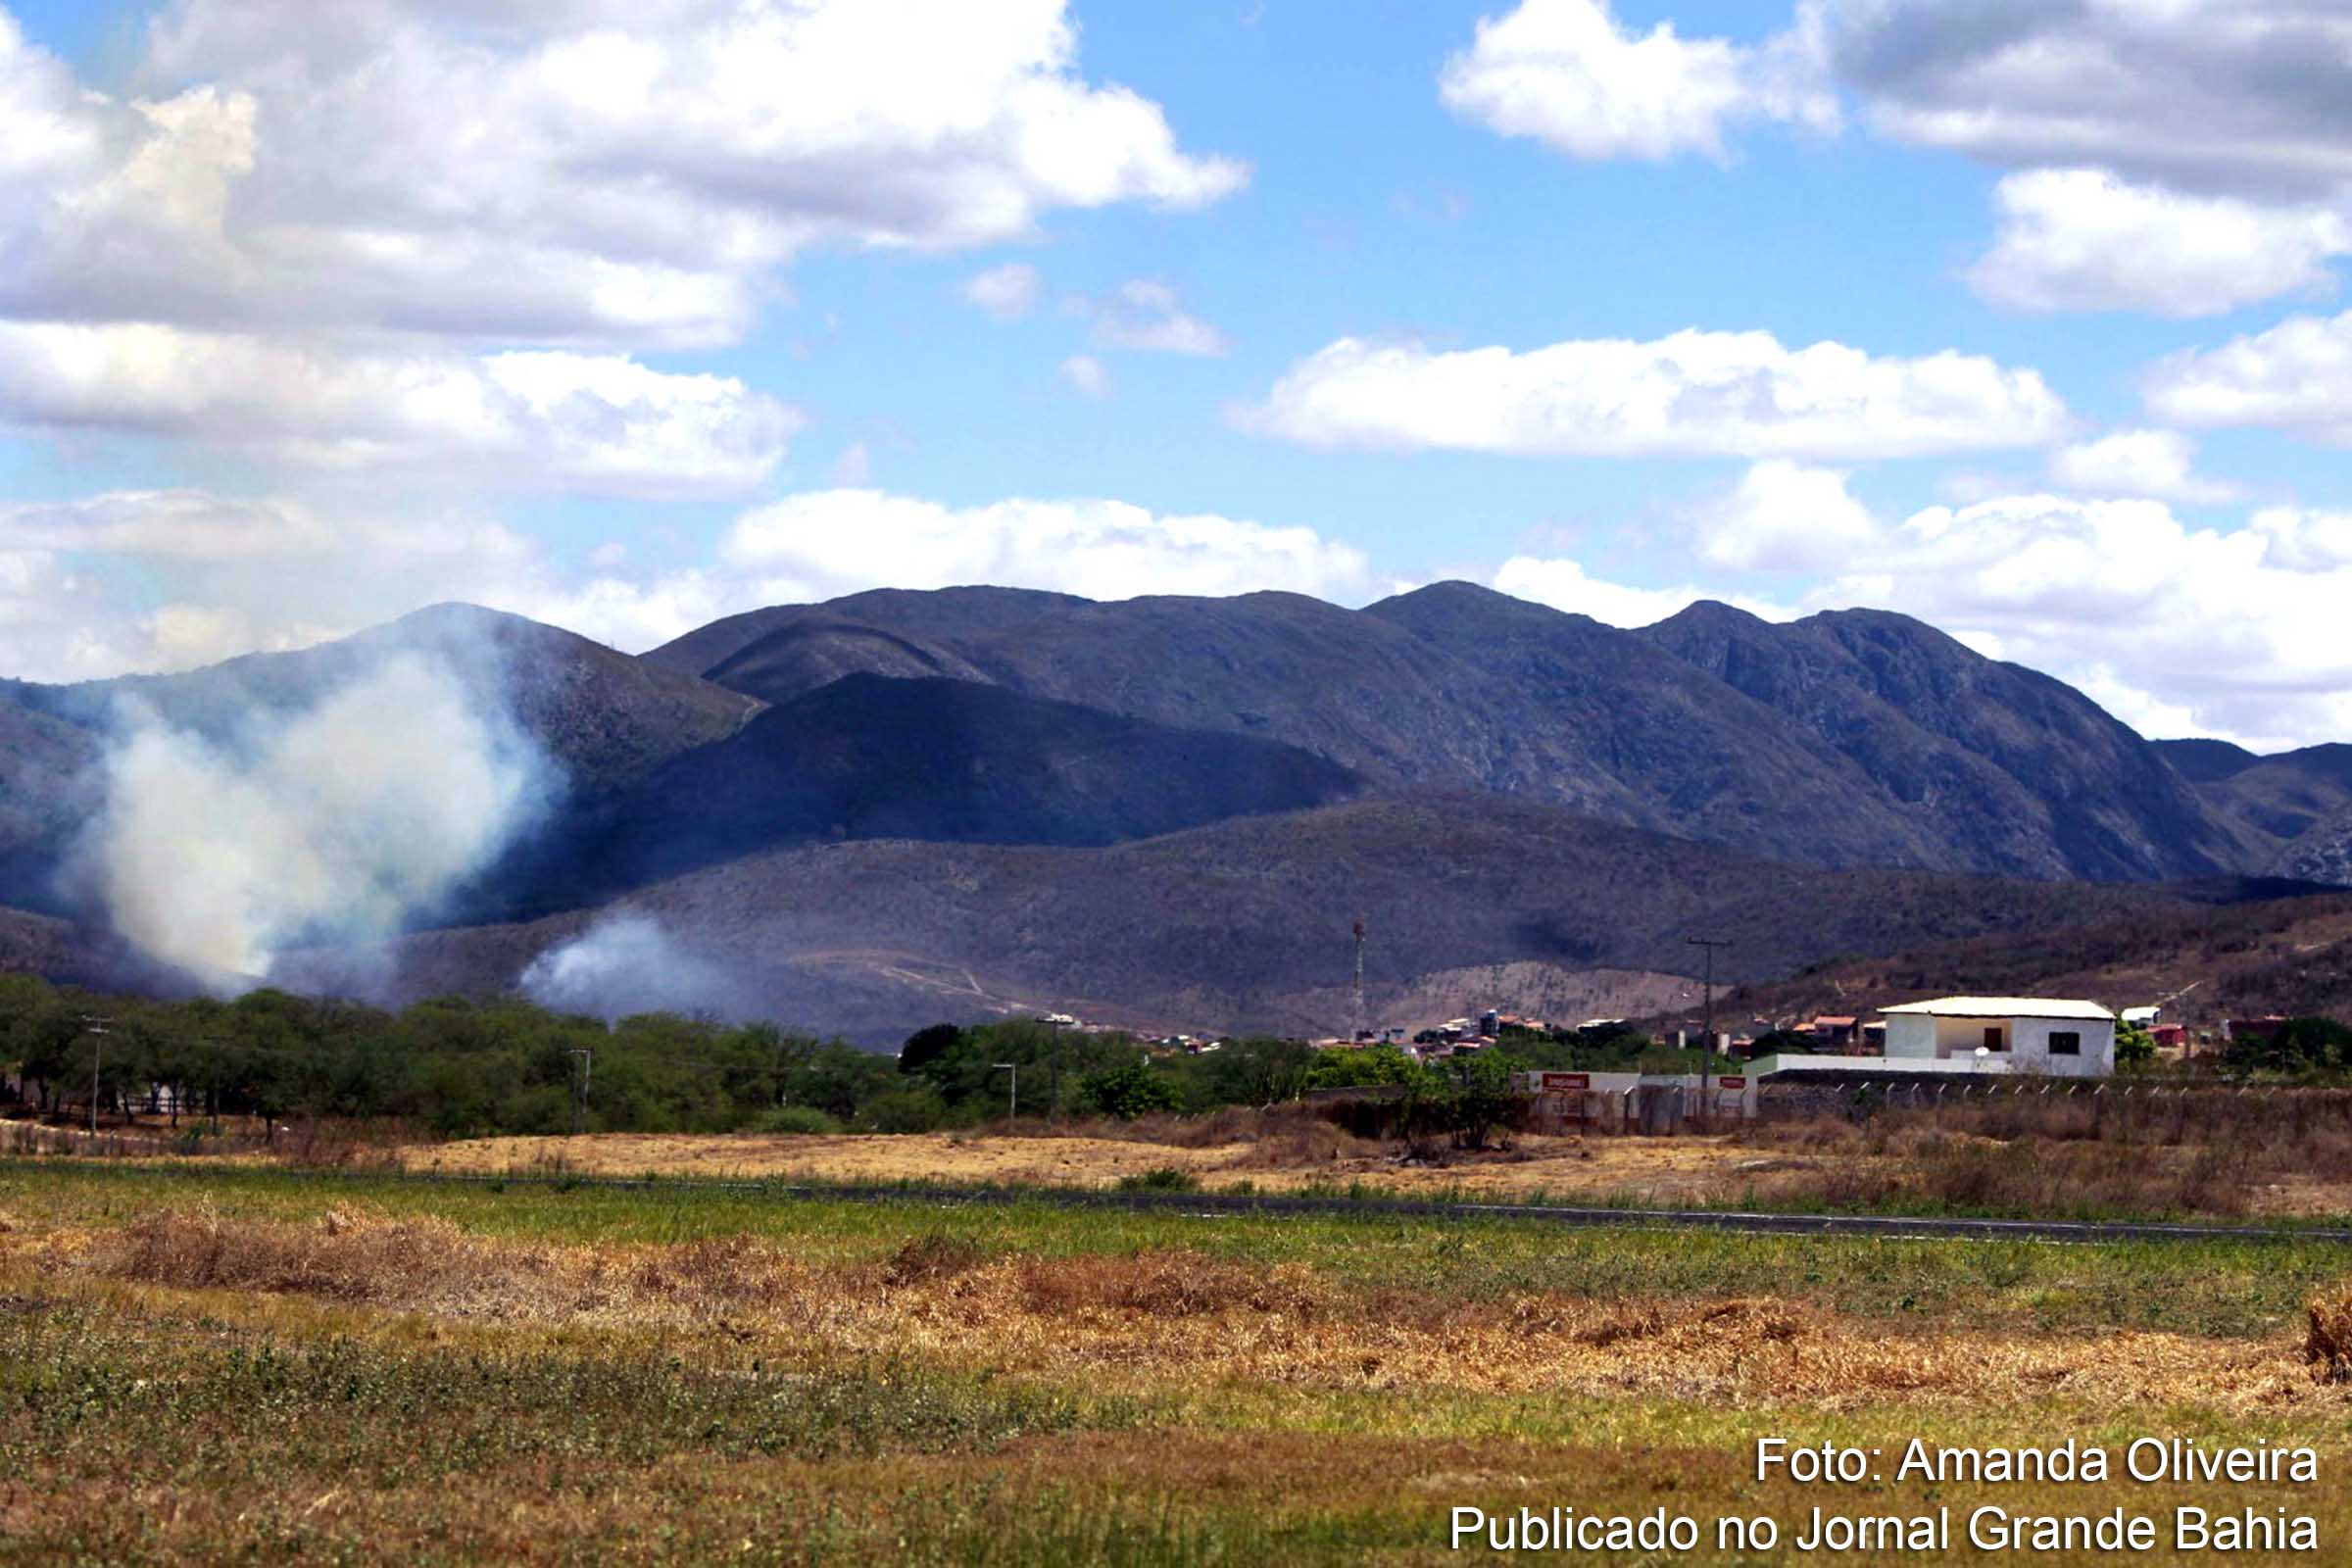 Ao menos 50 mil hectares foram queimados nos incêndios, de acordo com a Secretaria de Meio Ambiente da Bahia.